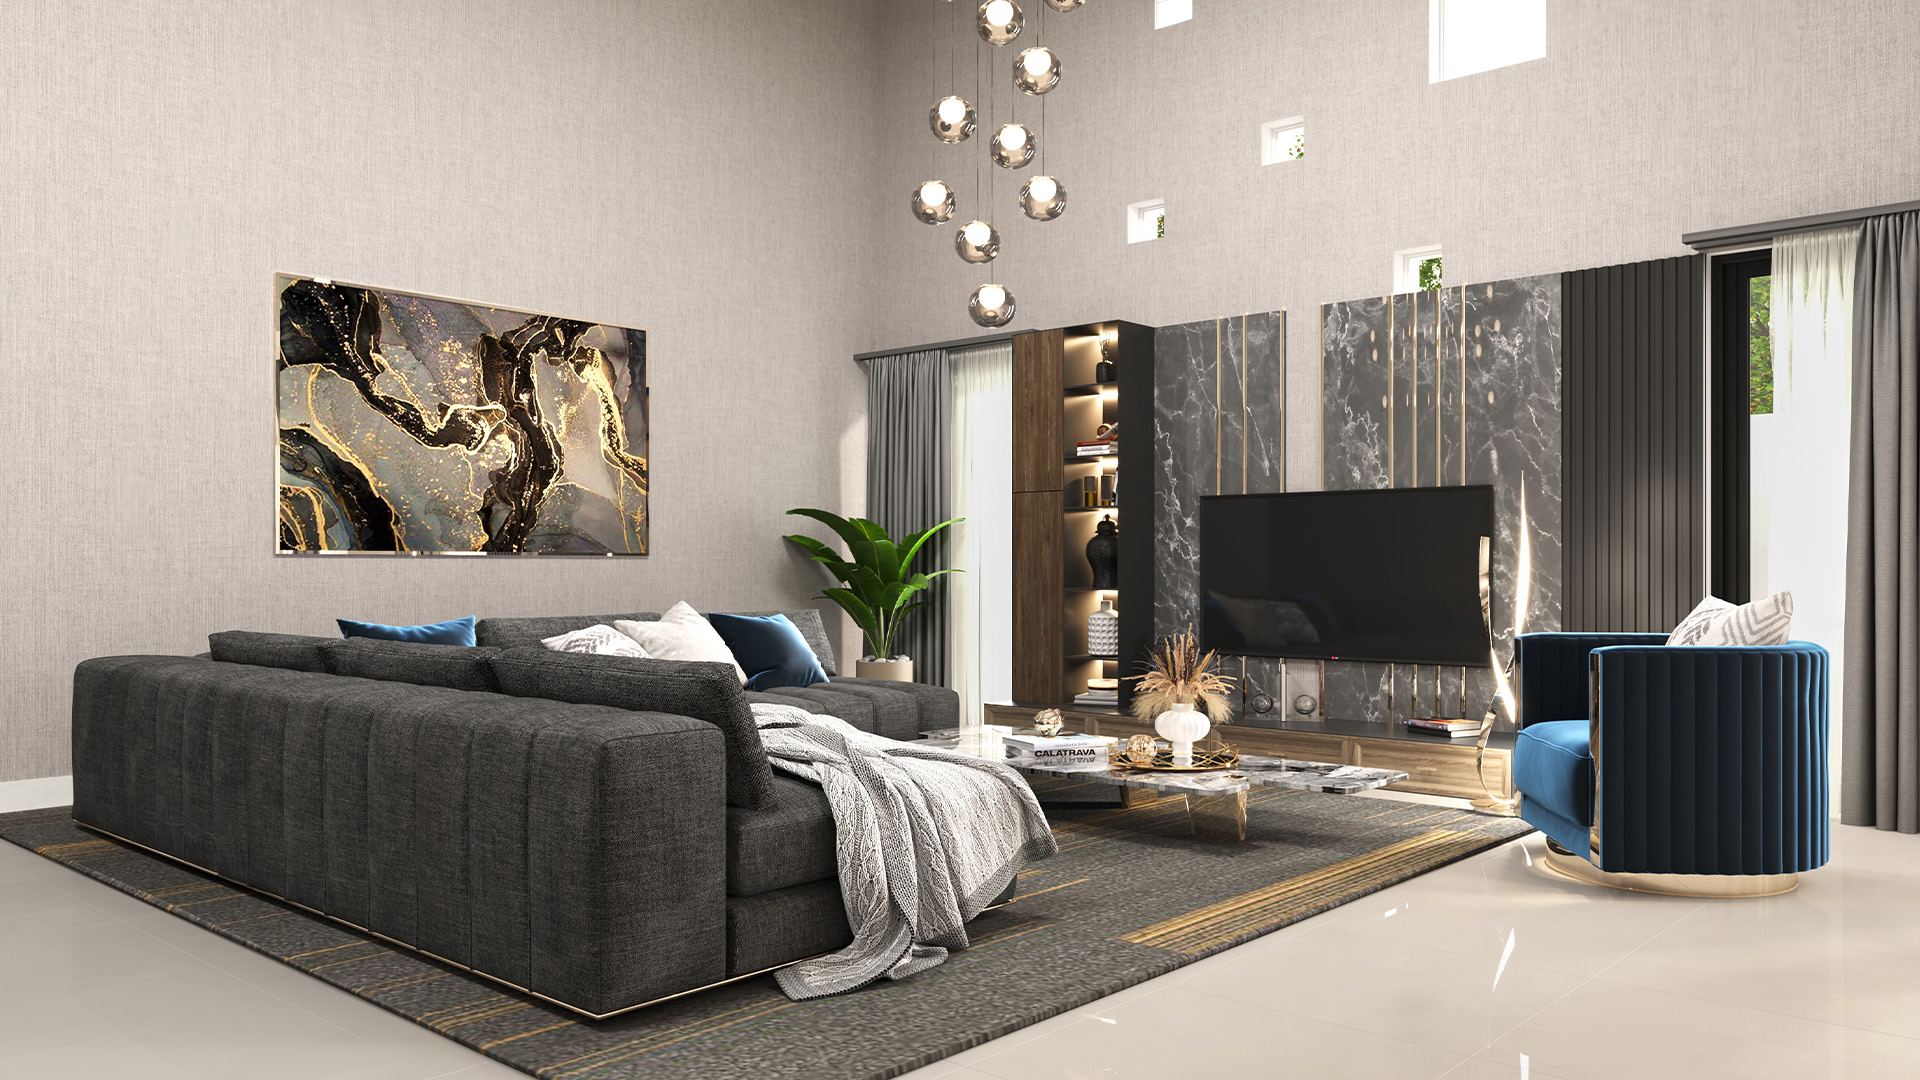 The Carrara @ 805 Mountbatten Road living room